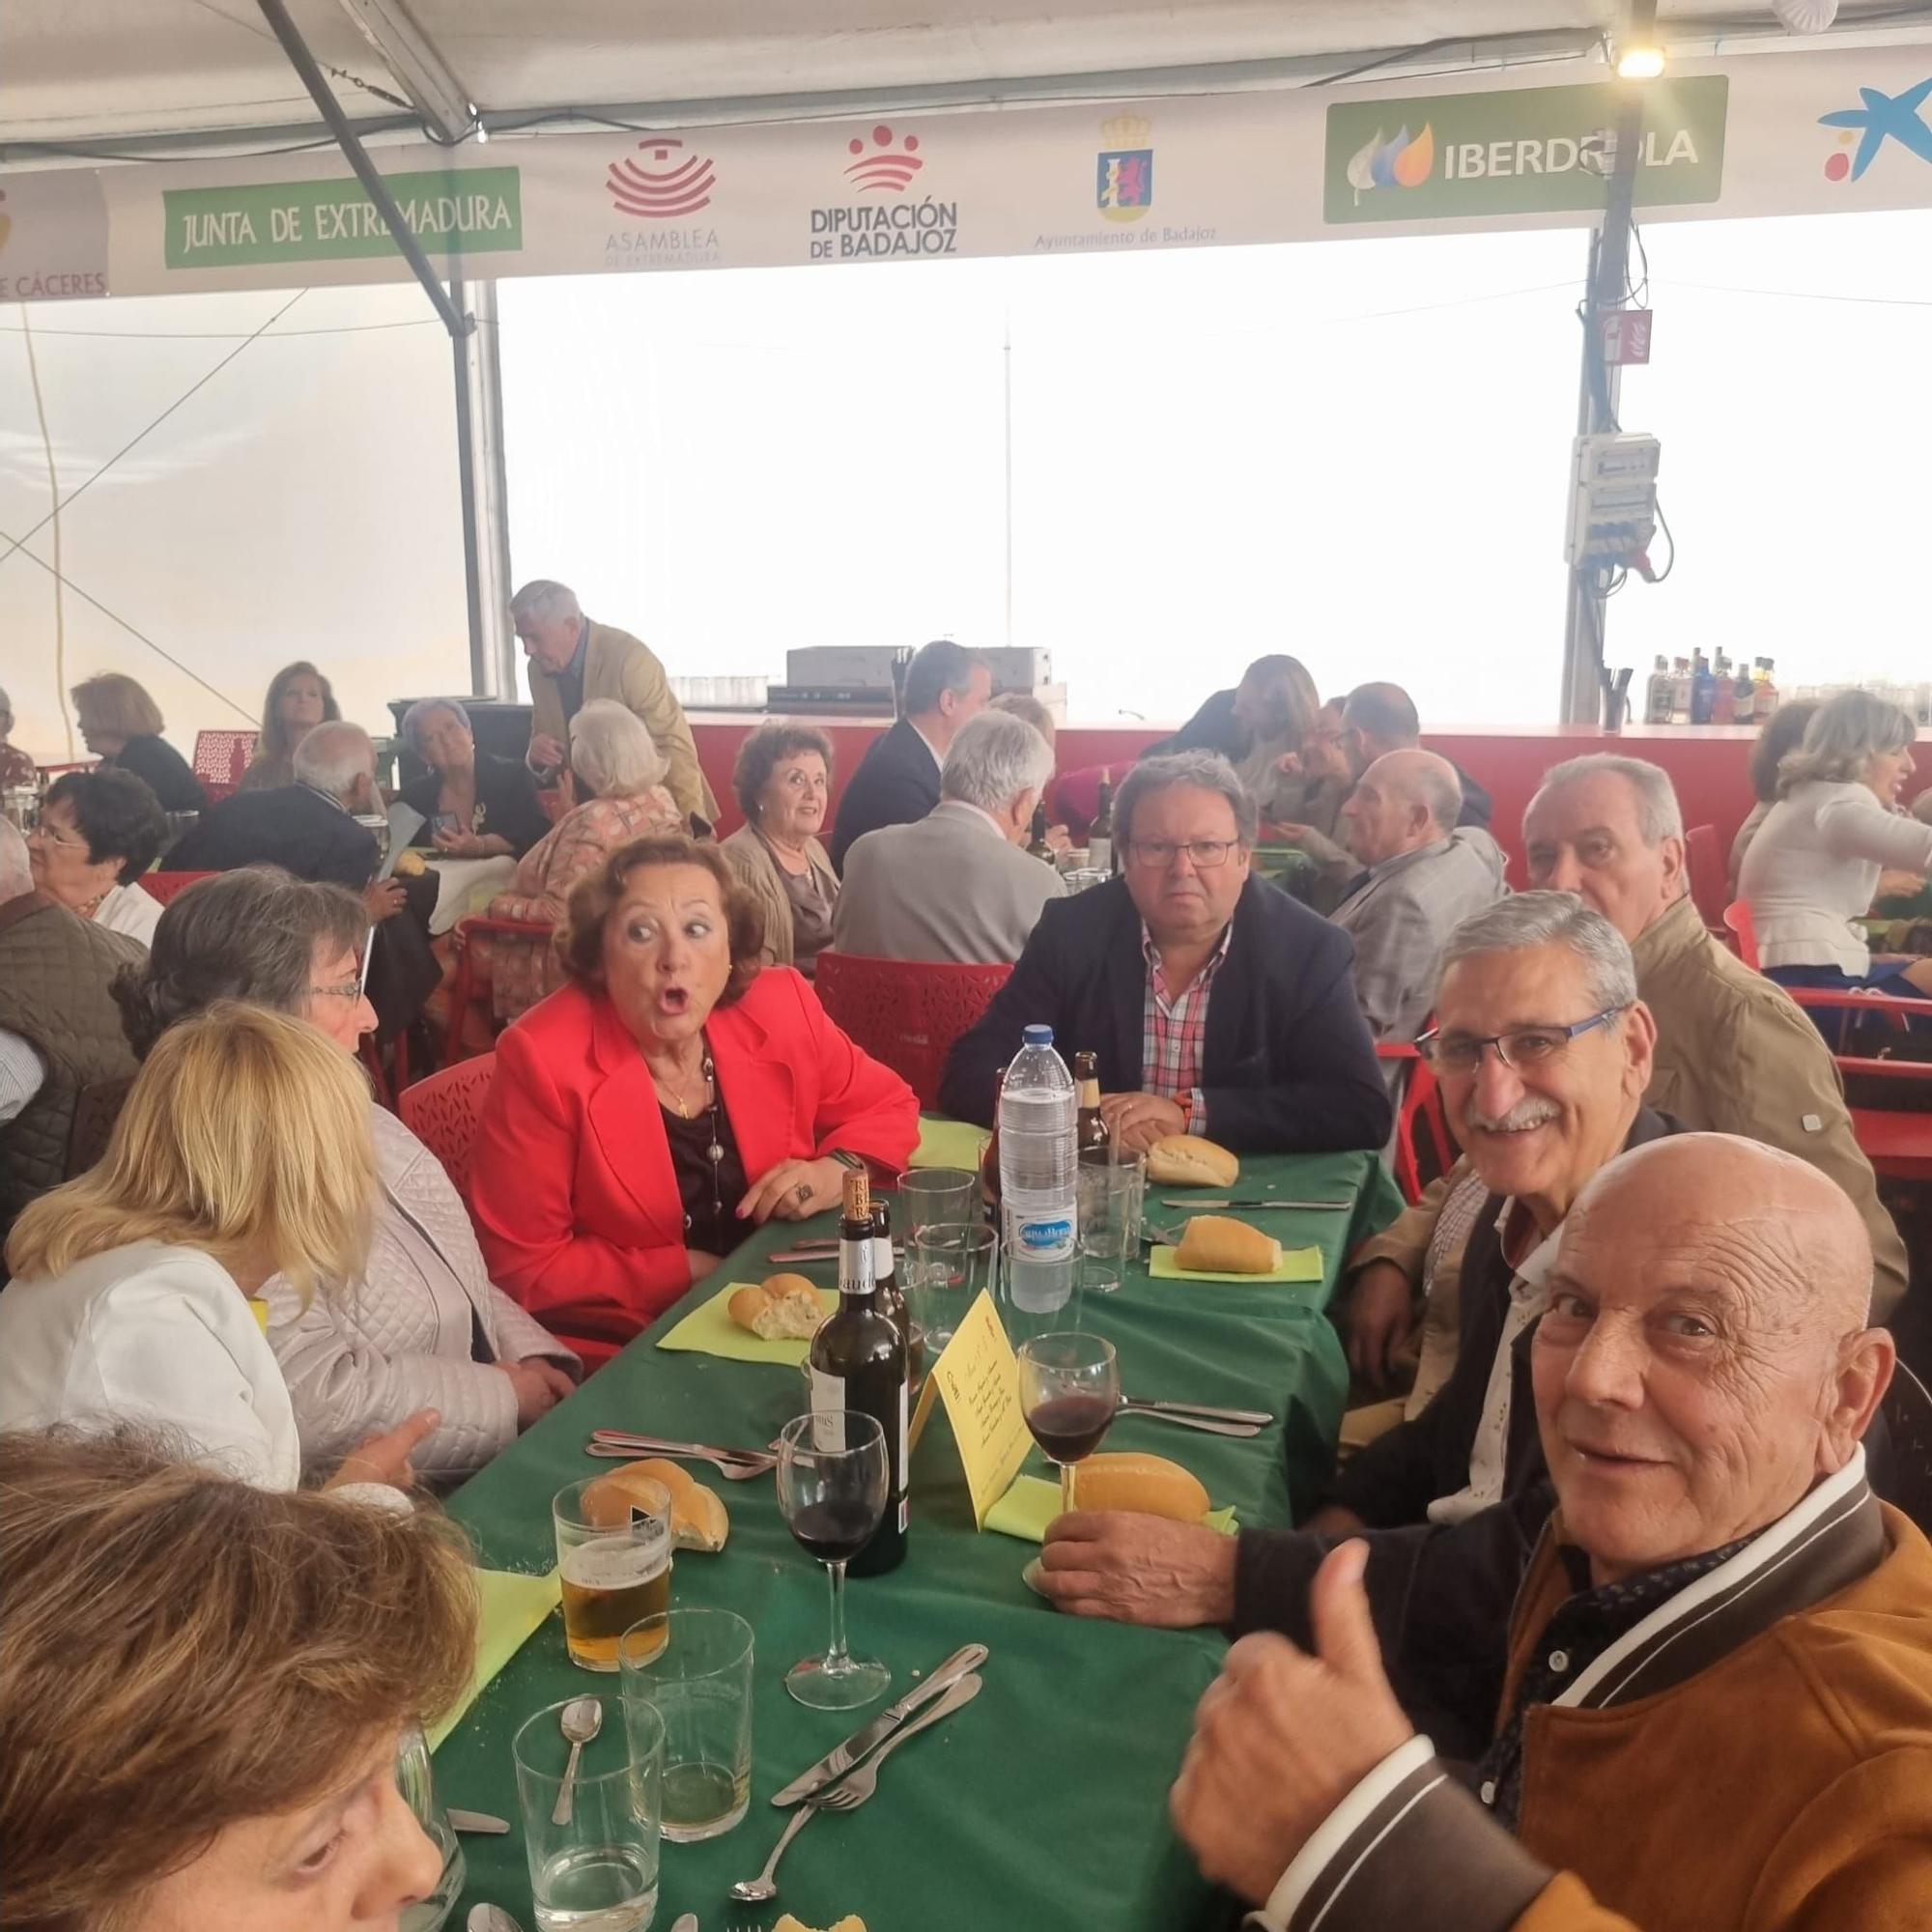 FOTOGALERÍA | Ambiente en las comidas en la caseta en homenaje al centenario de El Periódico Extremadura